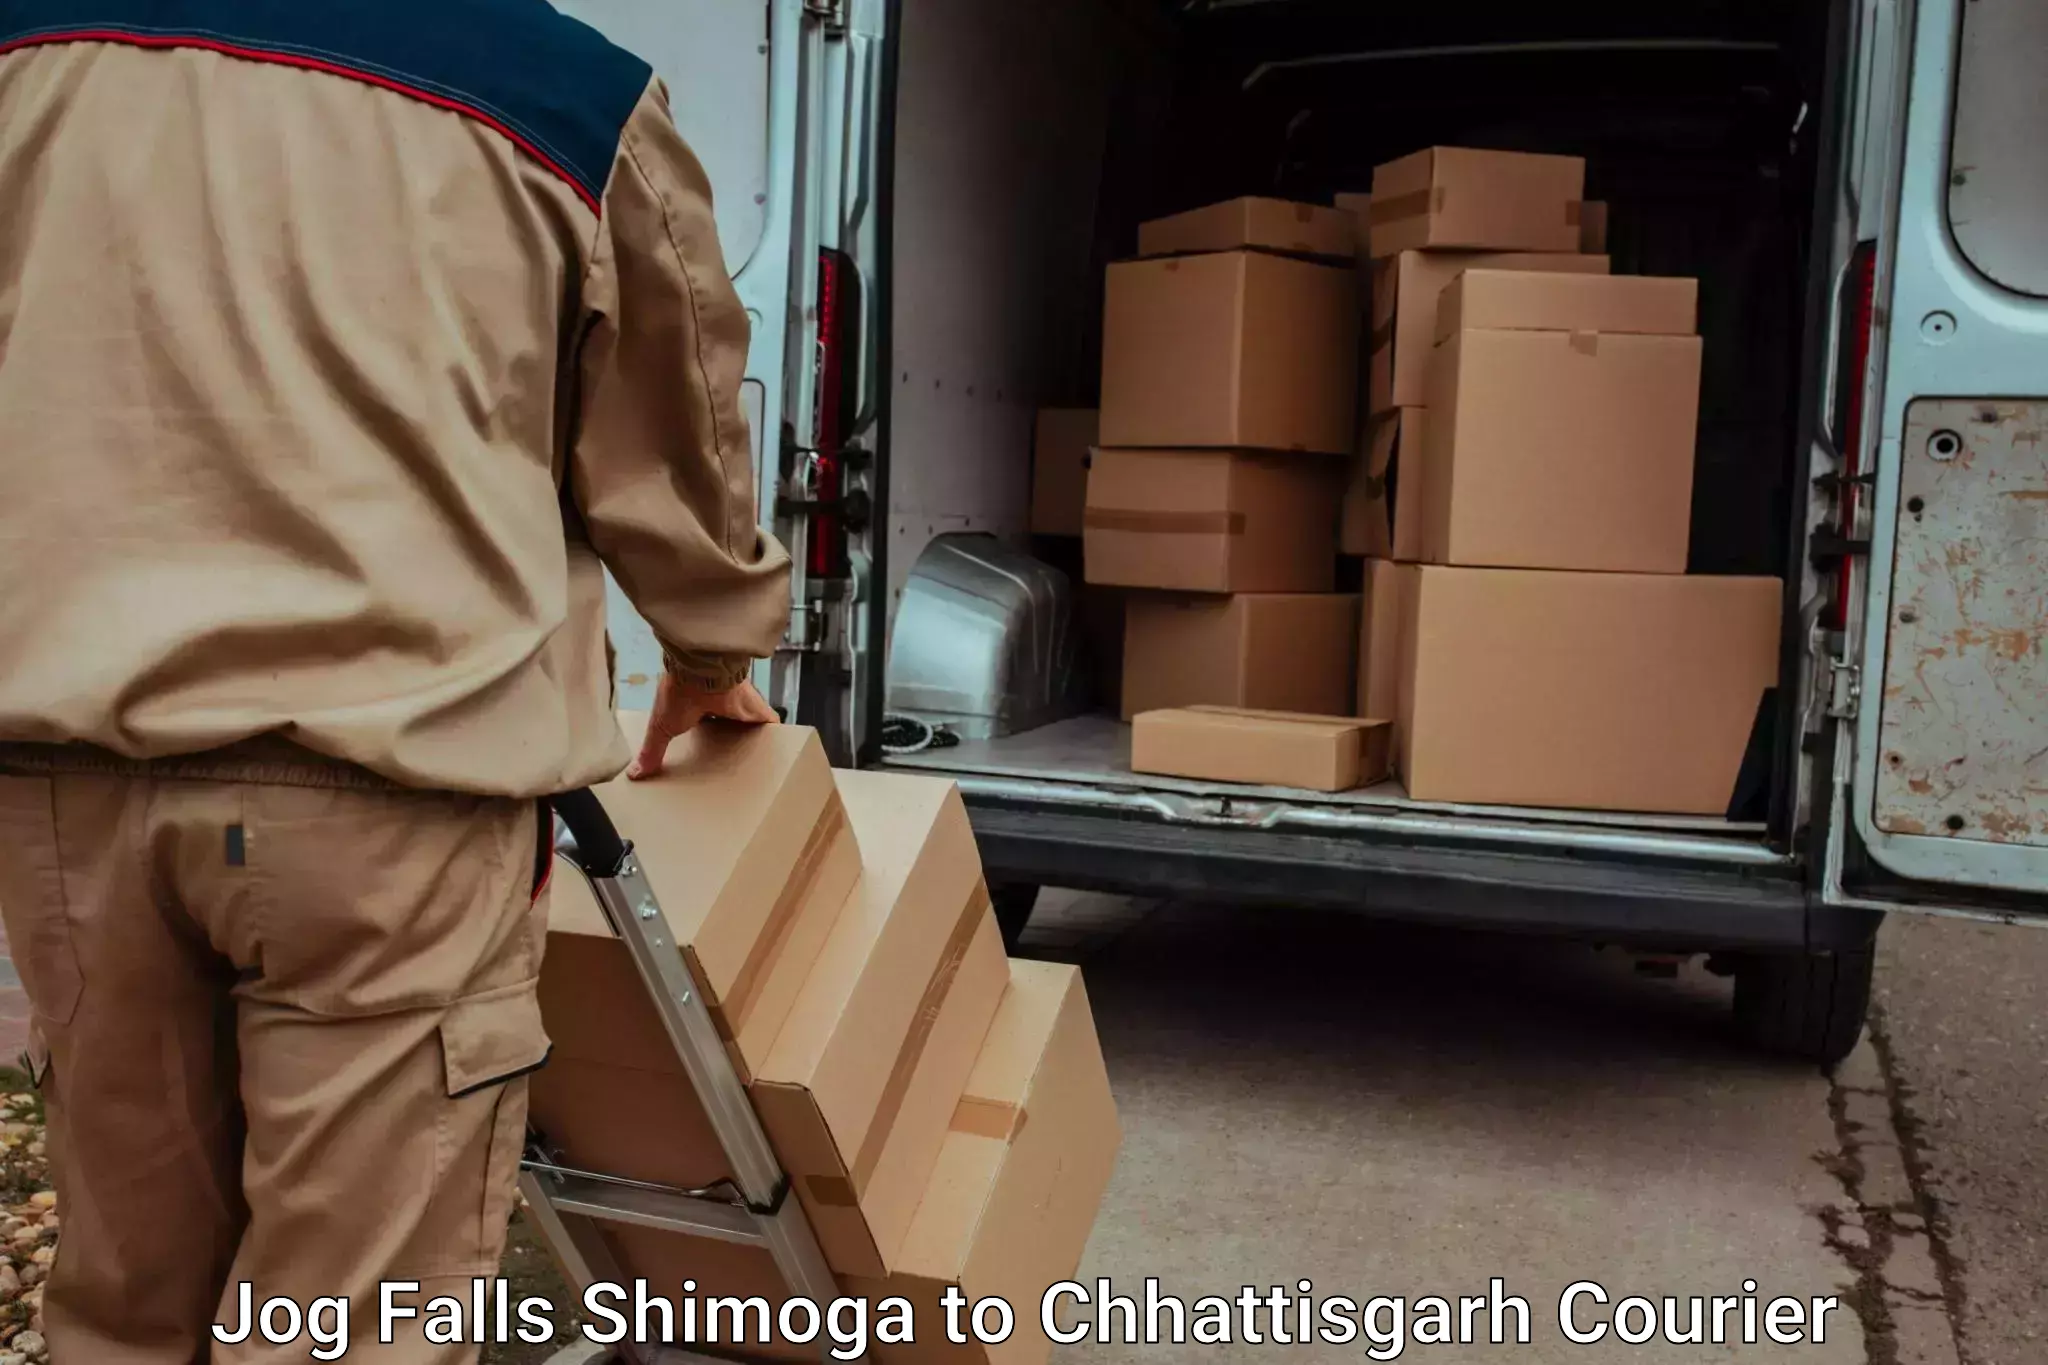 Baggage delivery technology Jog Falls Shimoga to Lailunga